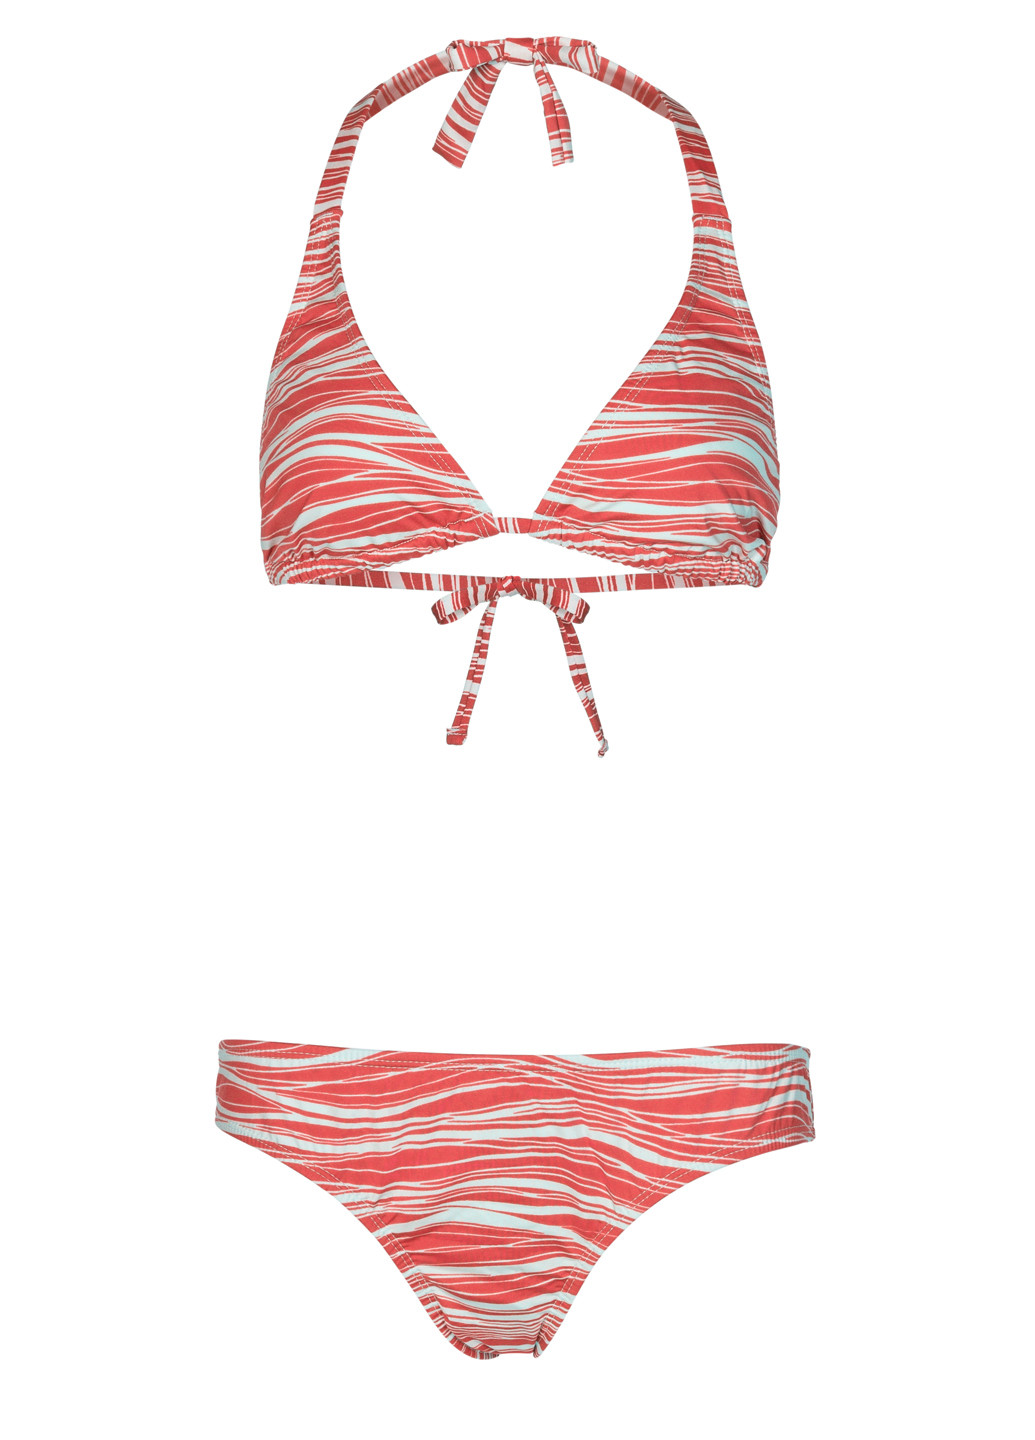 Червоний літній купальник в полоску роздільний, бікіні, халтер Beach Panties